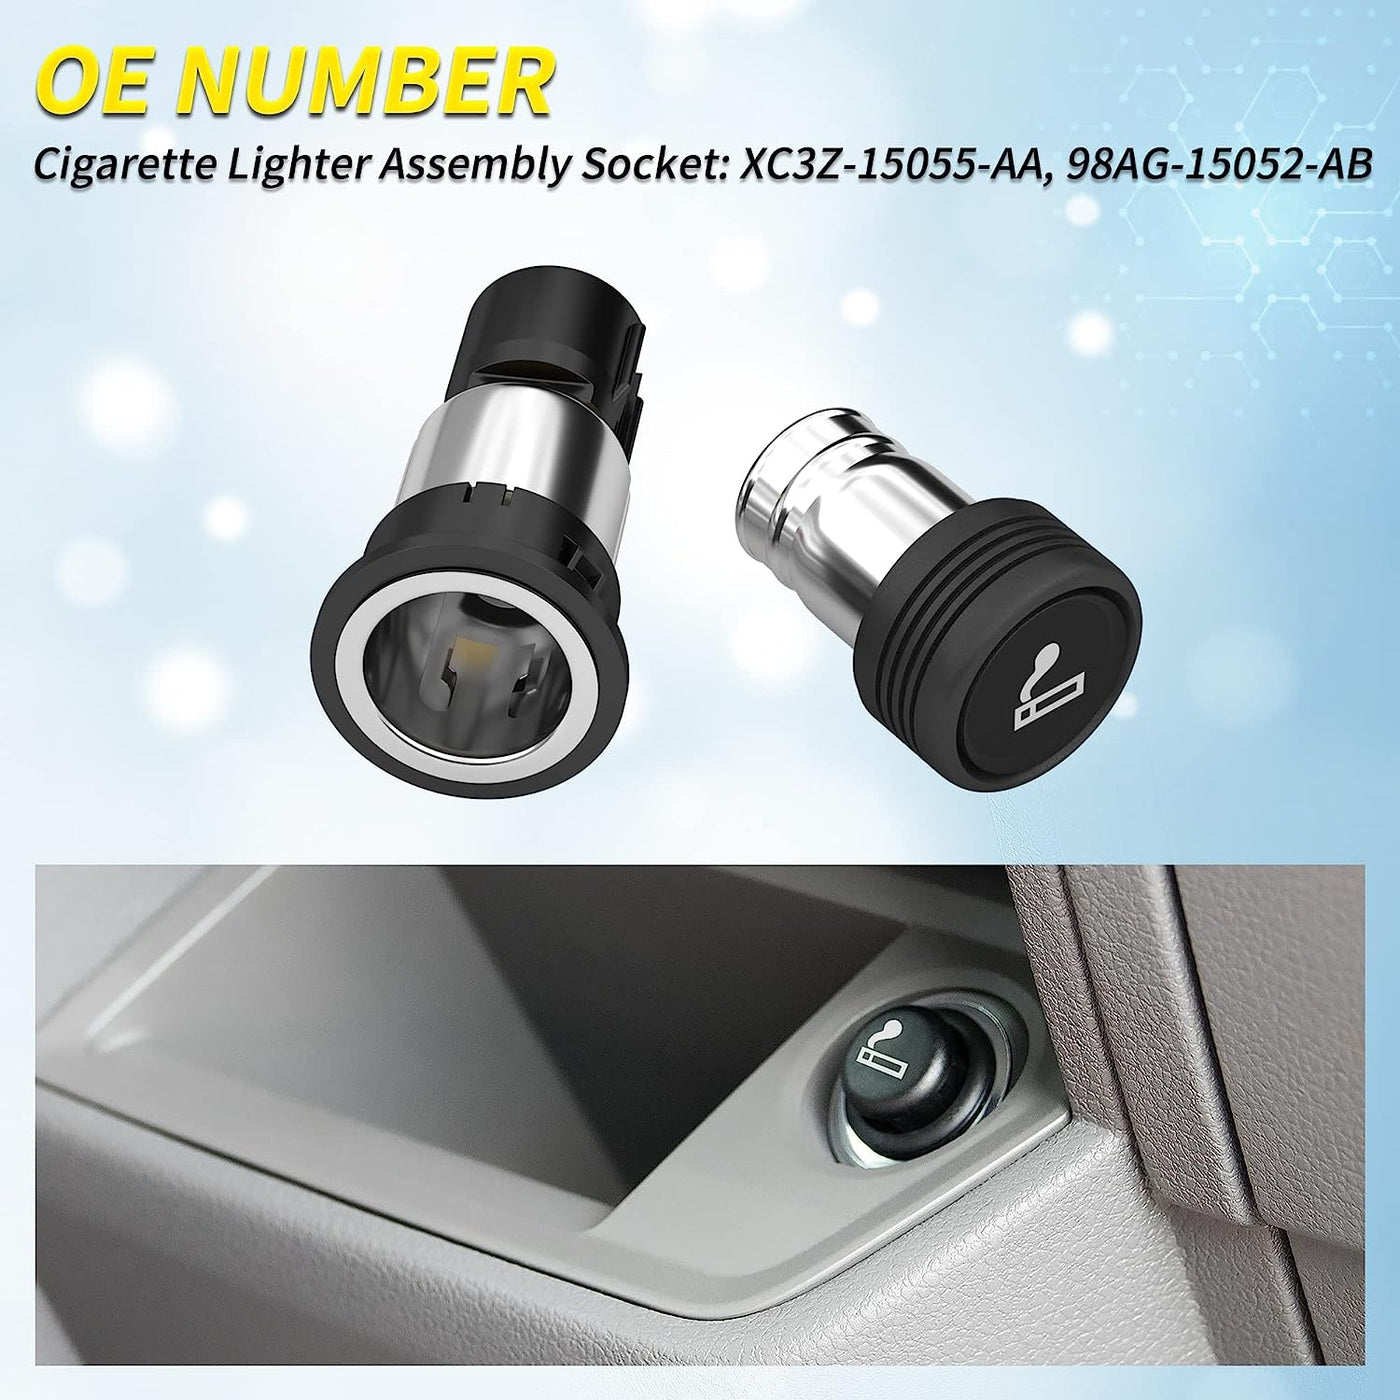 DR-10 Car Cigarette Lighter Assembly Socket and Plug OE Number